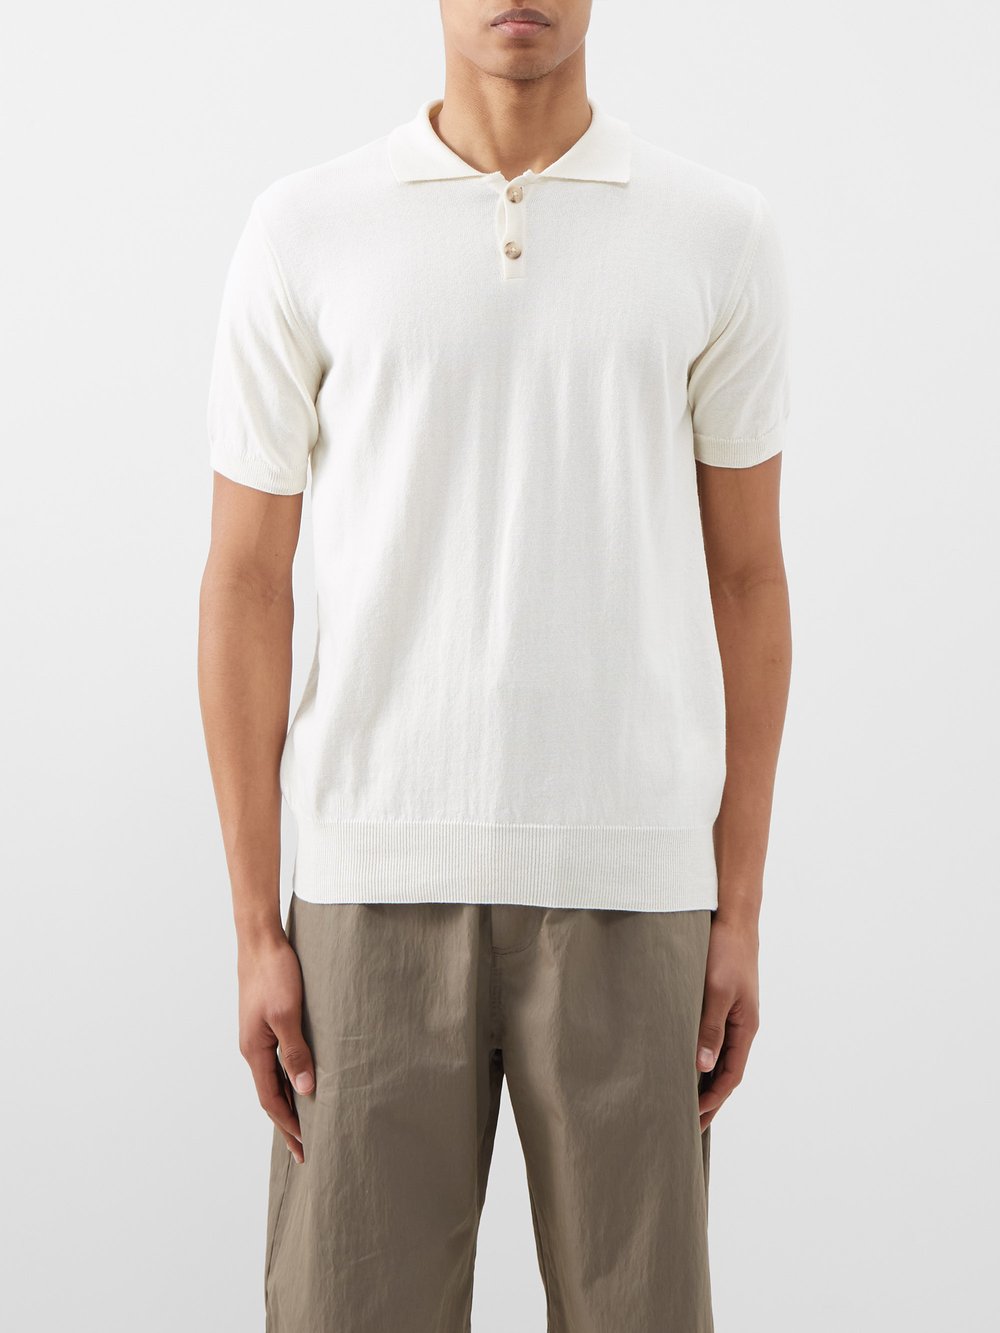 Трикотажная рубашка-поло из органического хлопка The Resort Co, белый